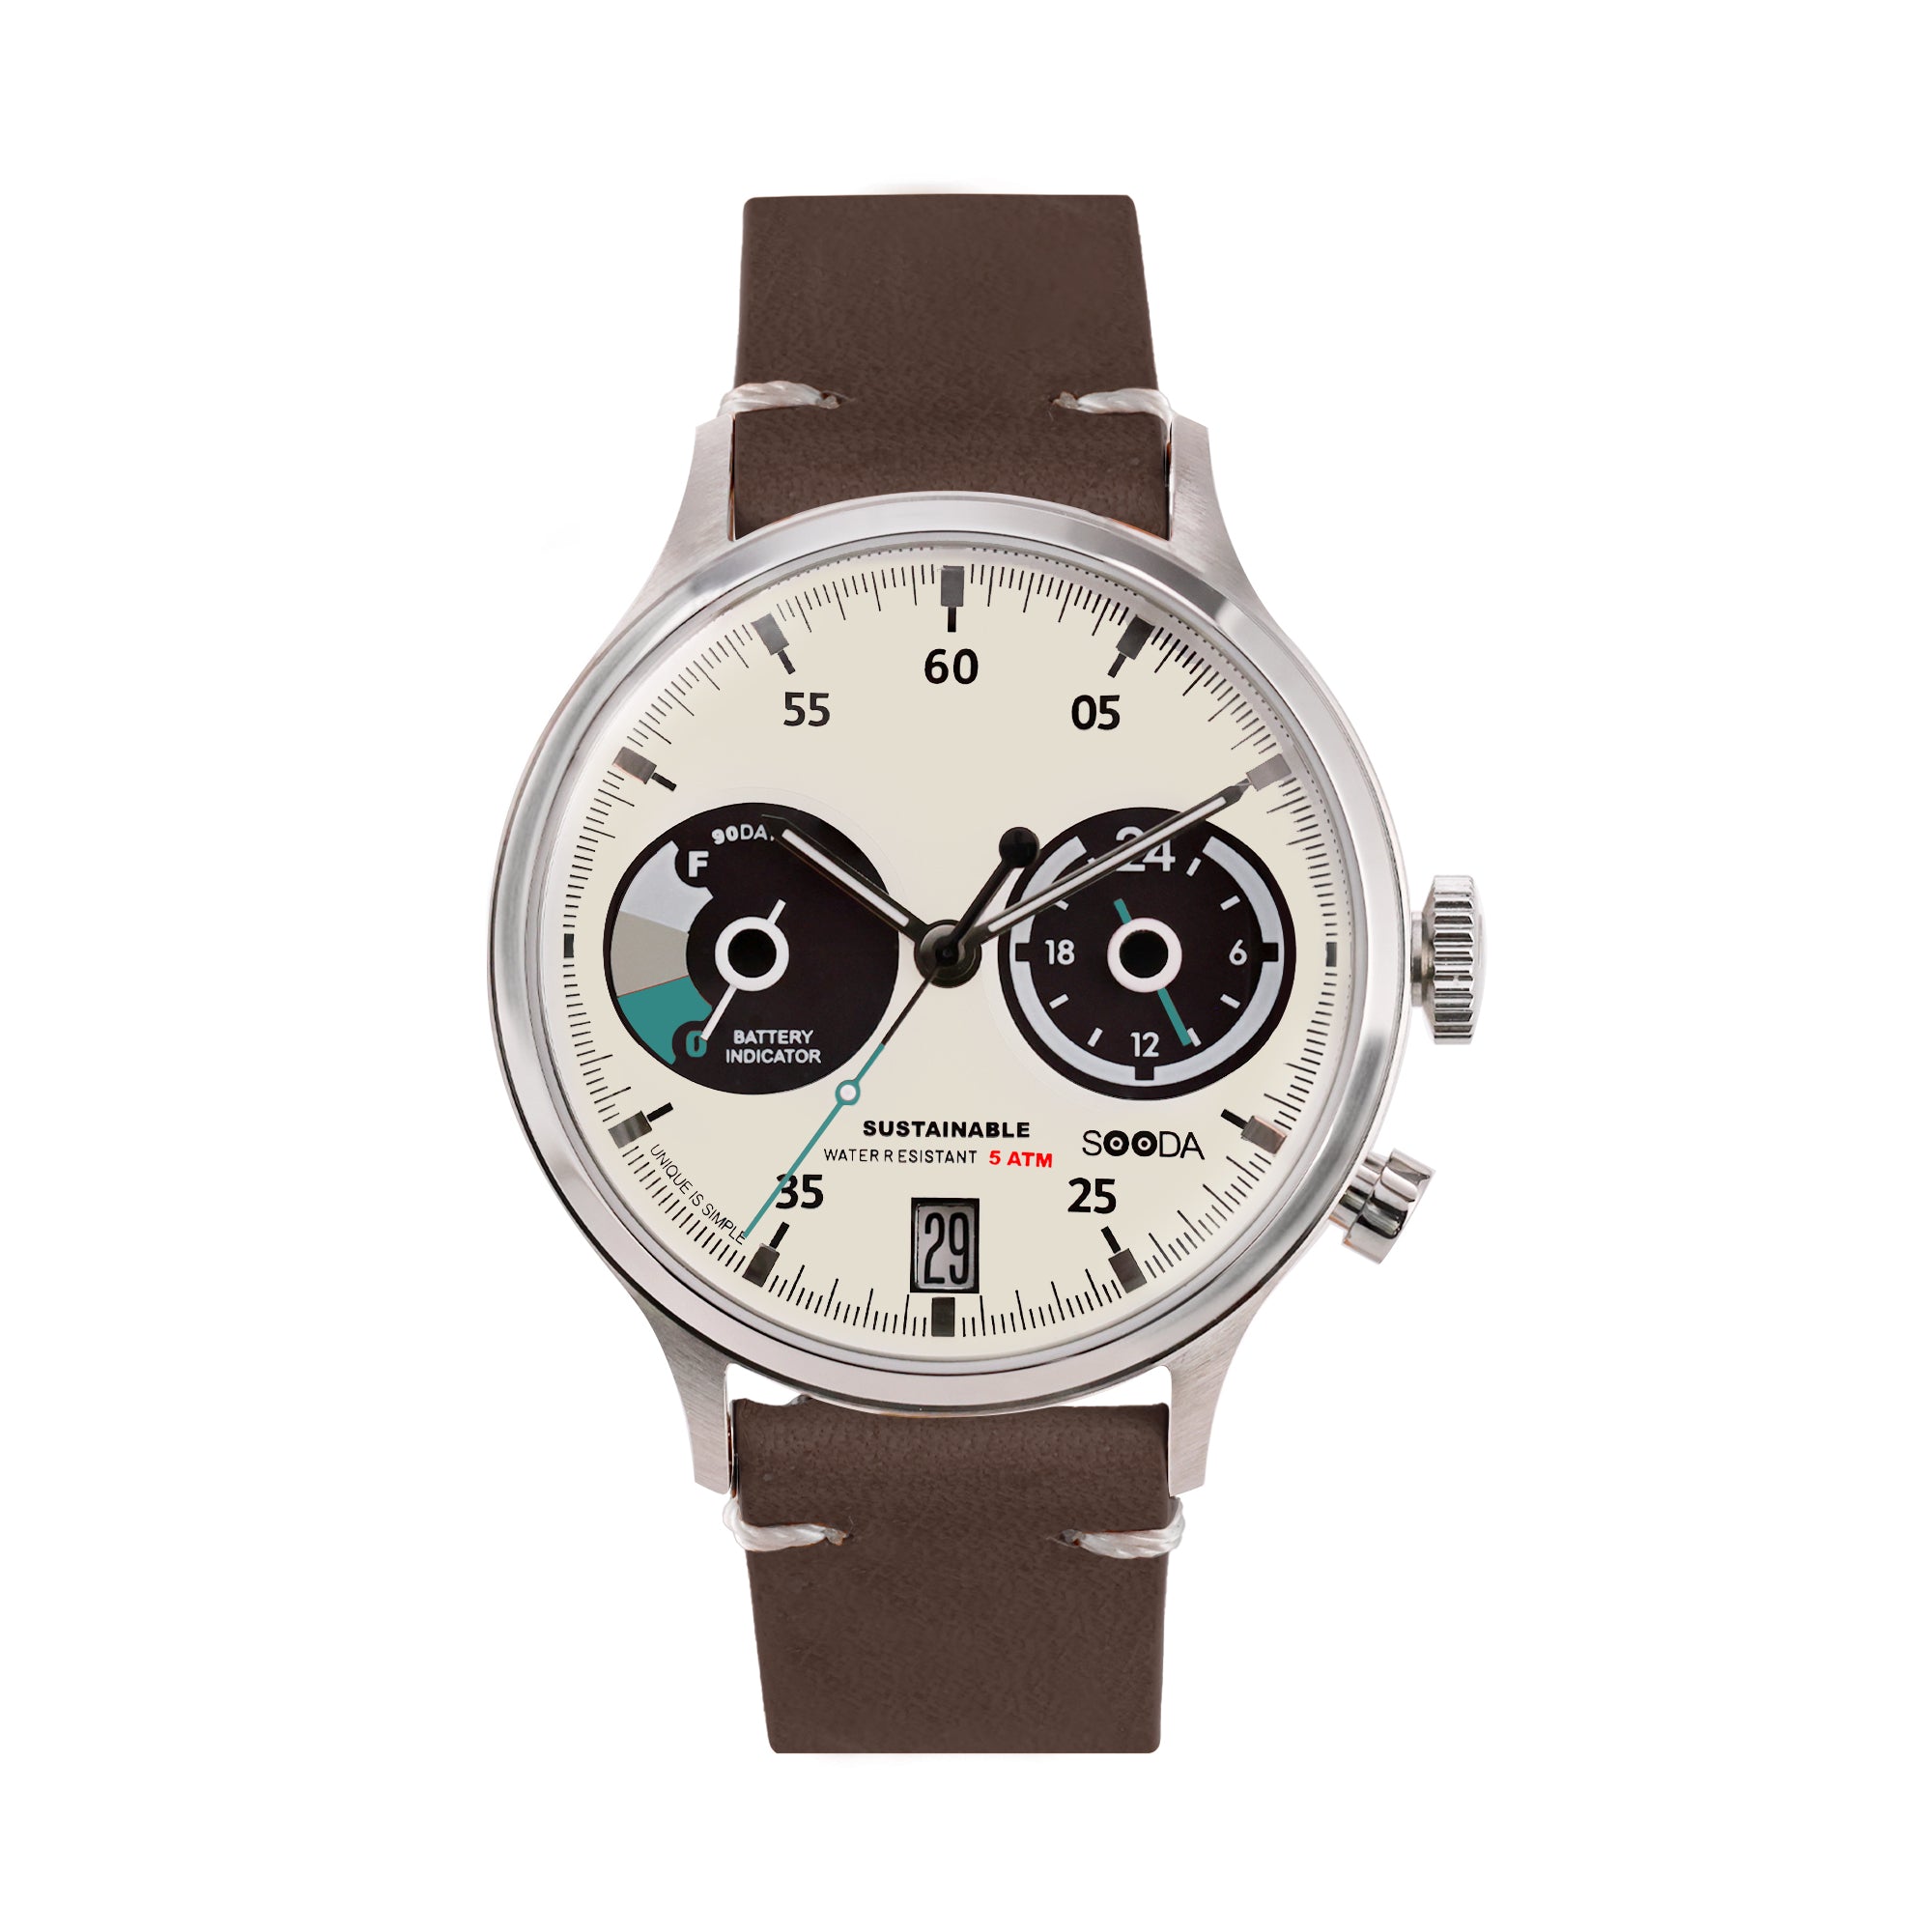 TACS Sooda 太陽能熊貓面手錶深棕色版 (TS2302B)